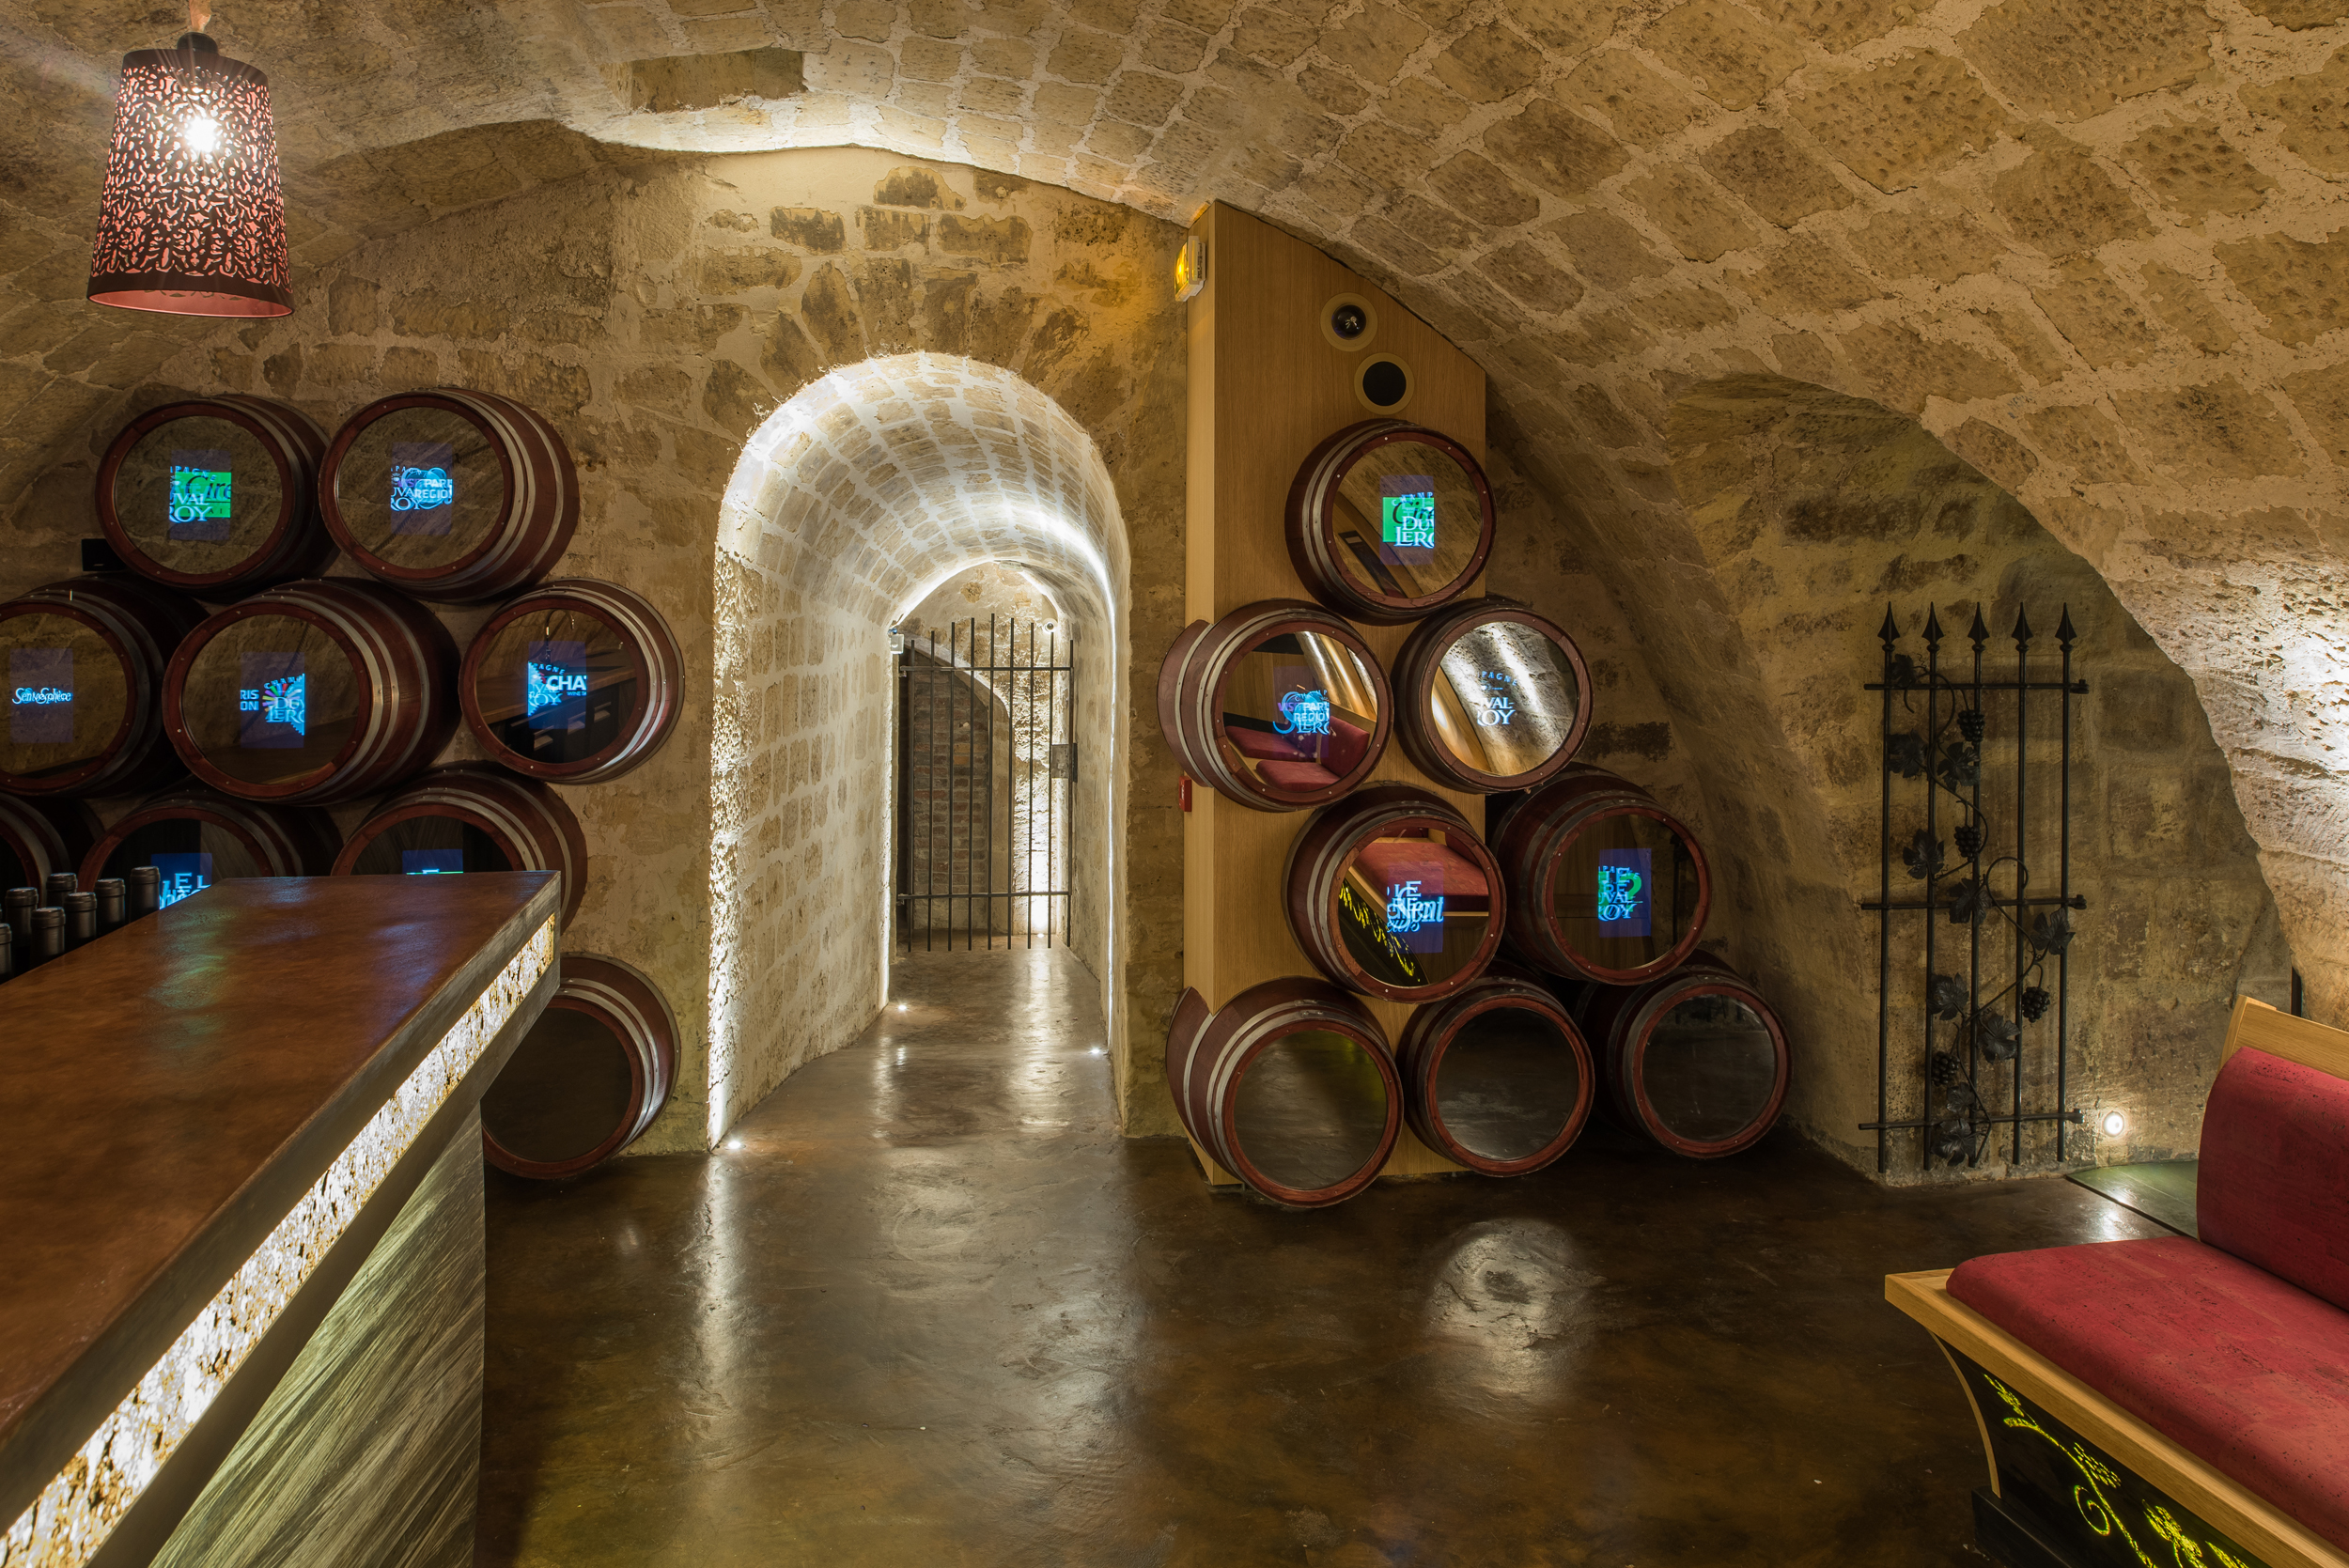 Achetez votre box de vin, Les Caves du Louvre